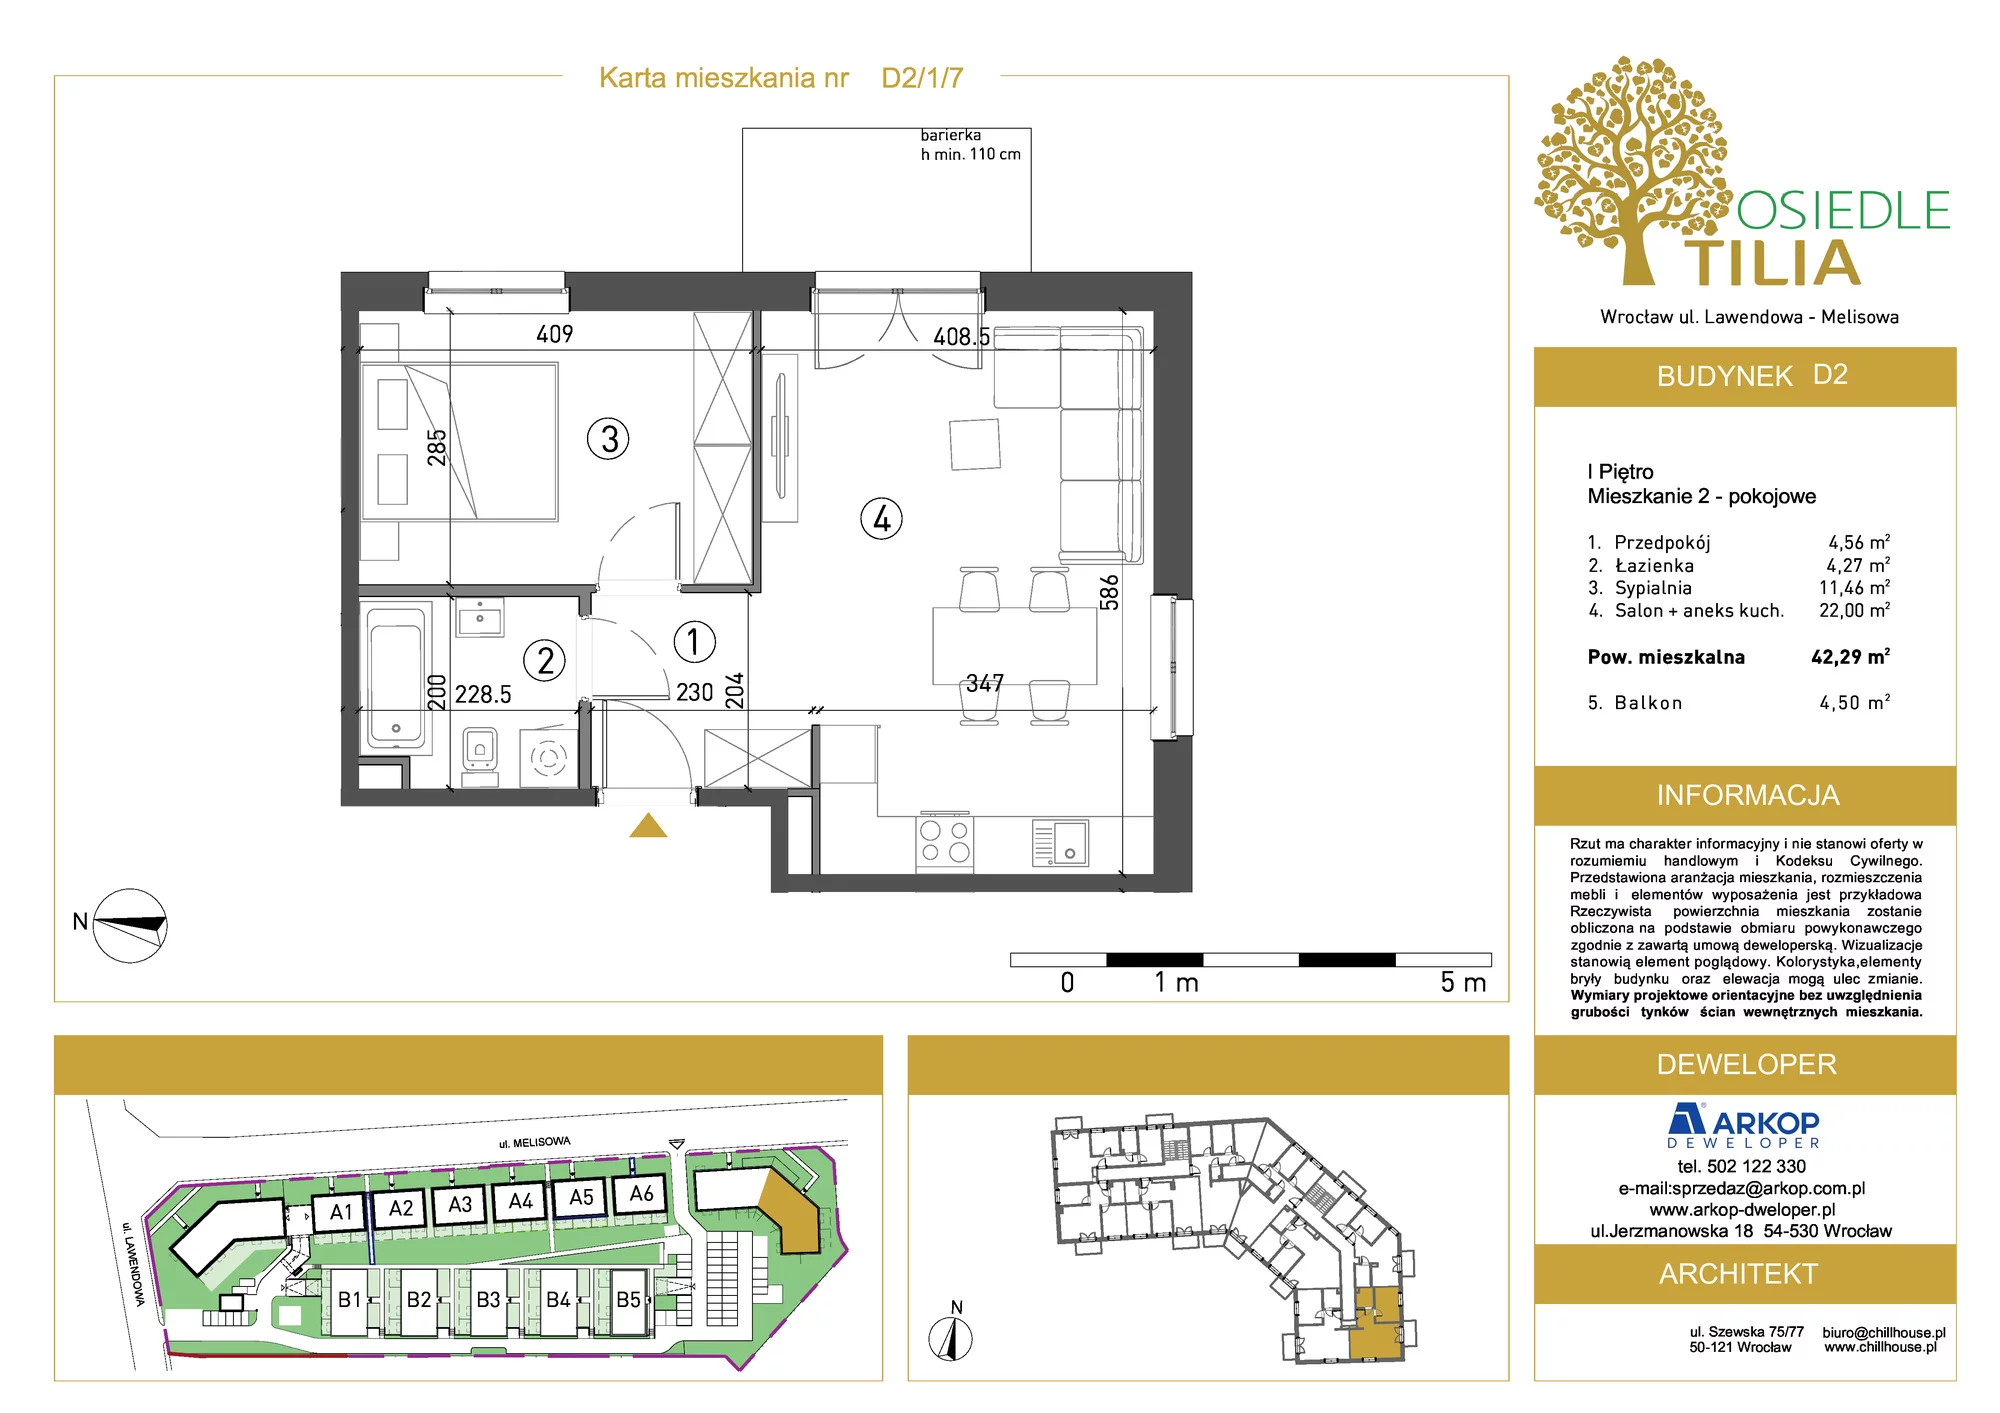 Mieszkanie 42,29 m², piętro 1, oferta nr D2/1/7, Osiedle Tilia, Wrocław, Lipa Piotrowska, Psie Pole, ul. Lawendowa/Melisowa